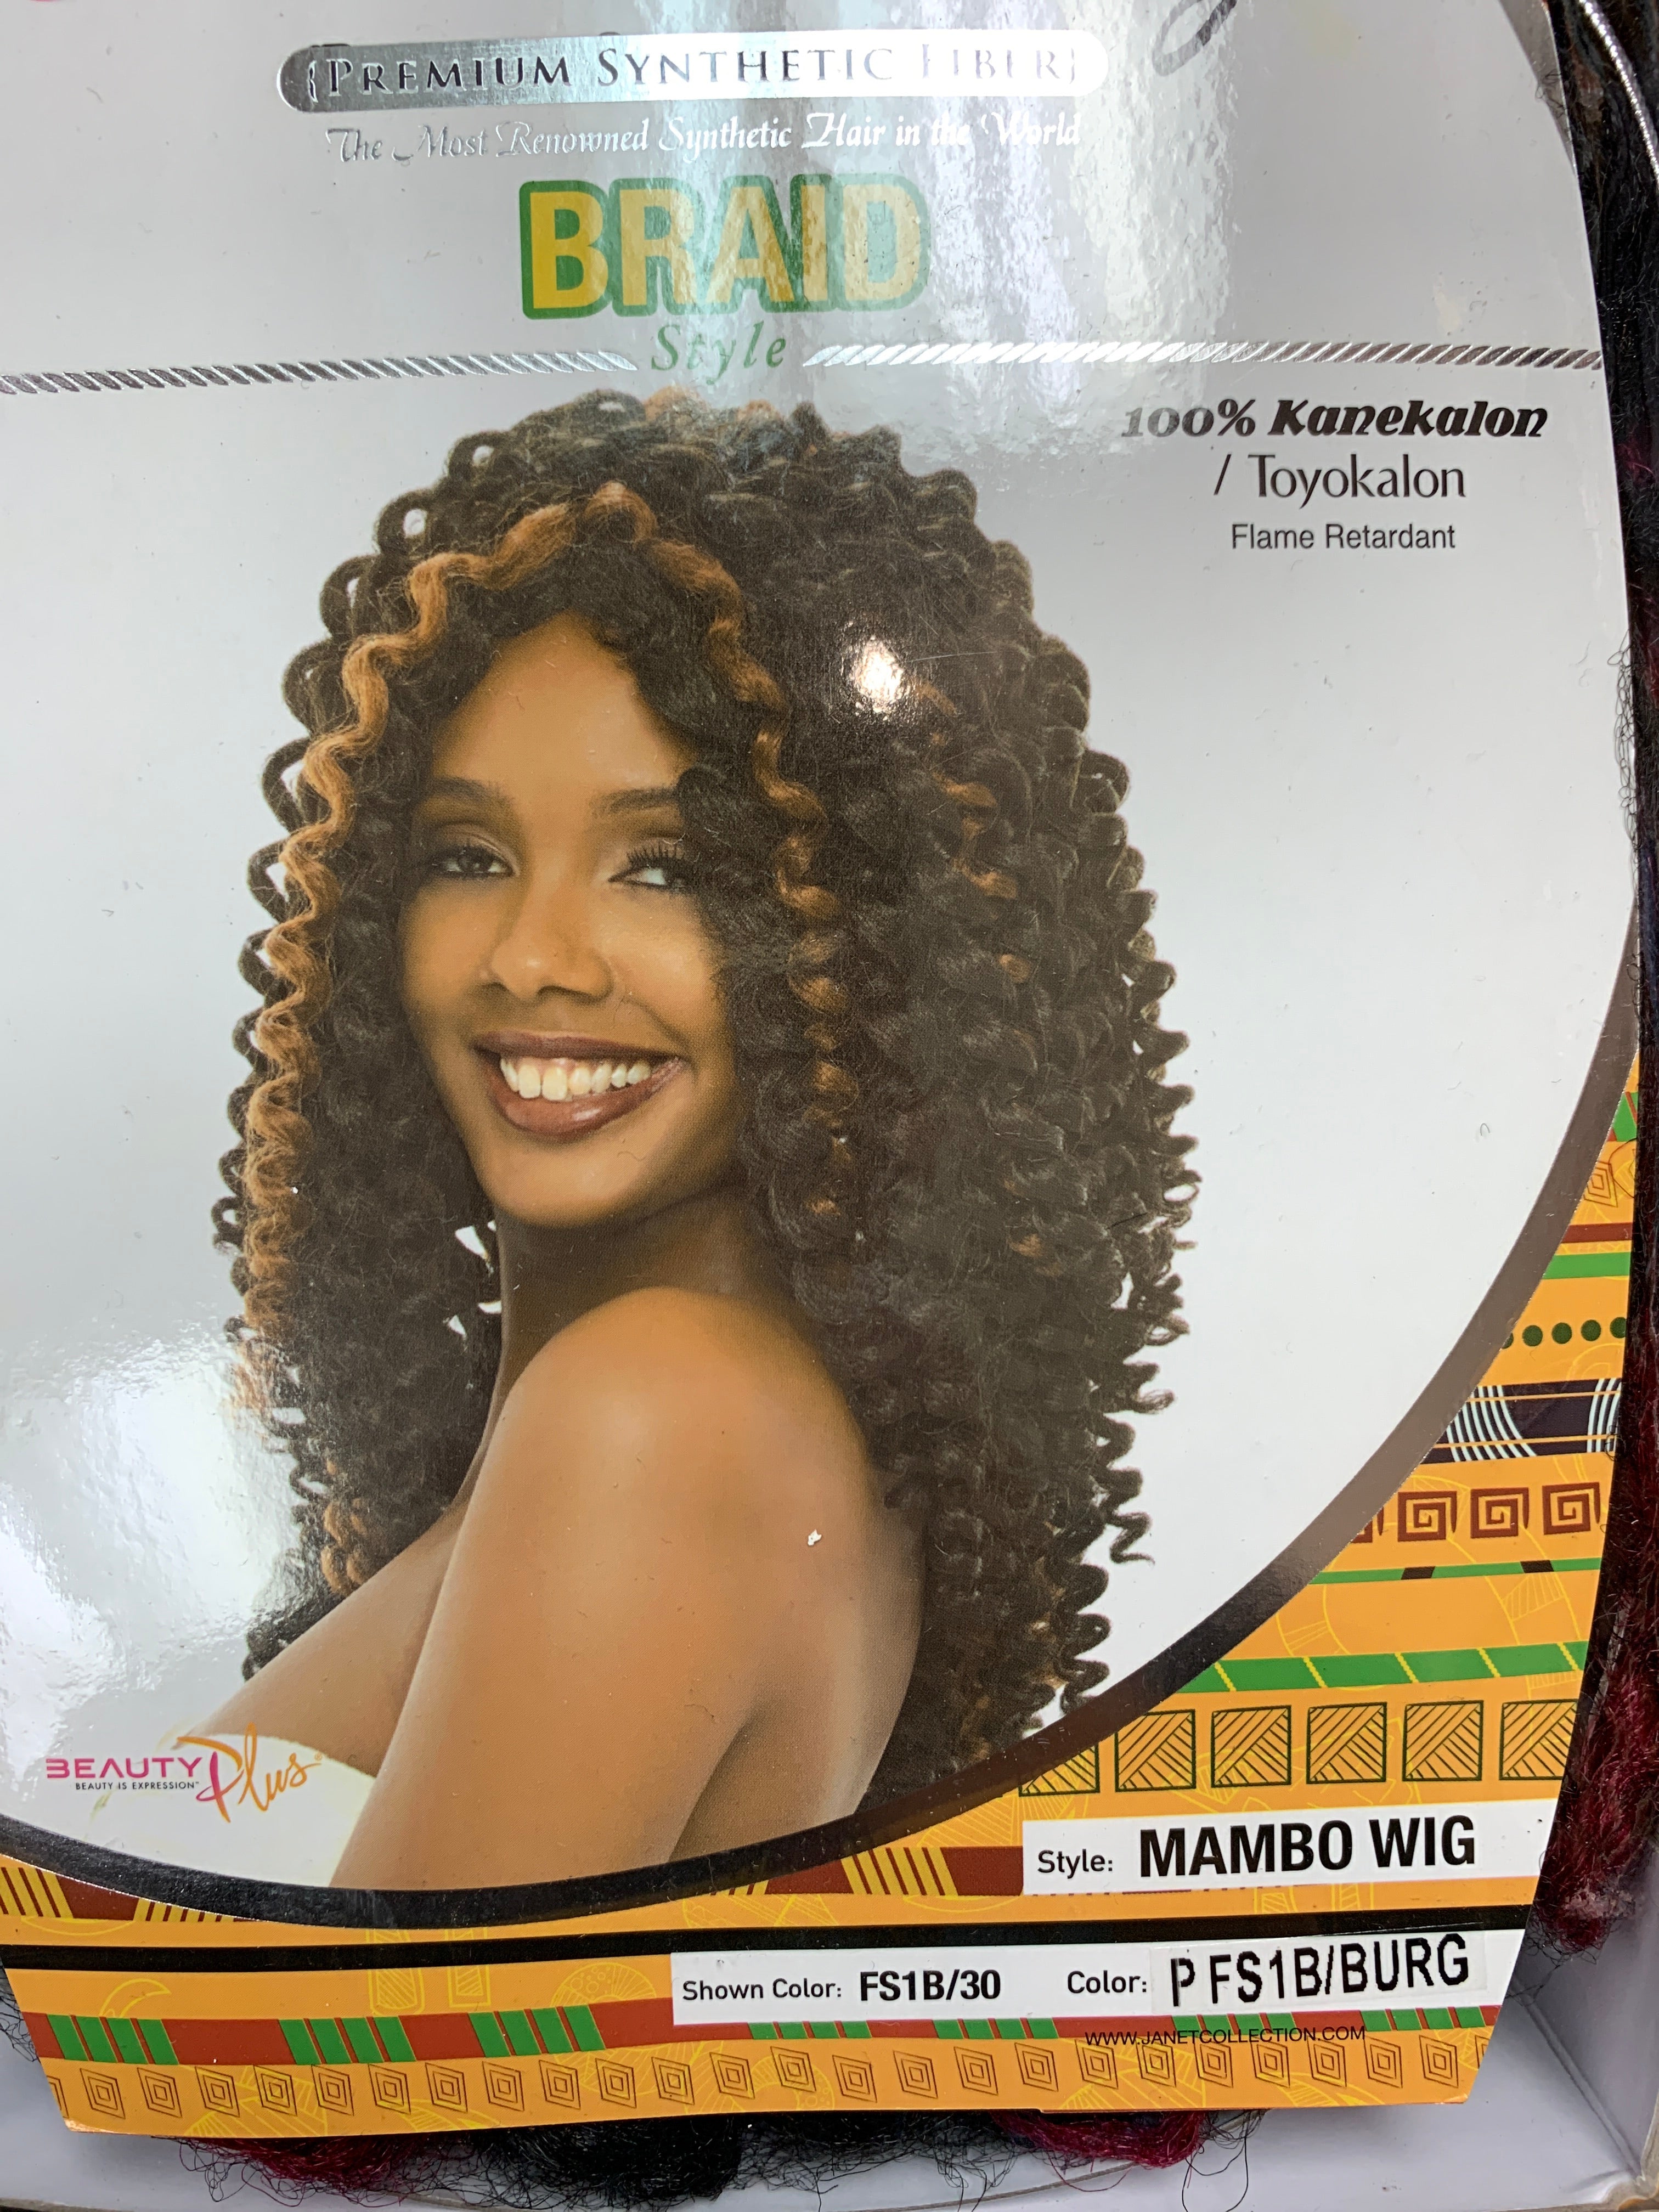 Janet Mambo braid style